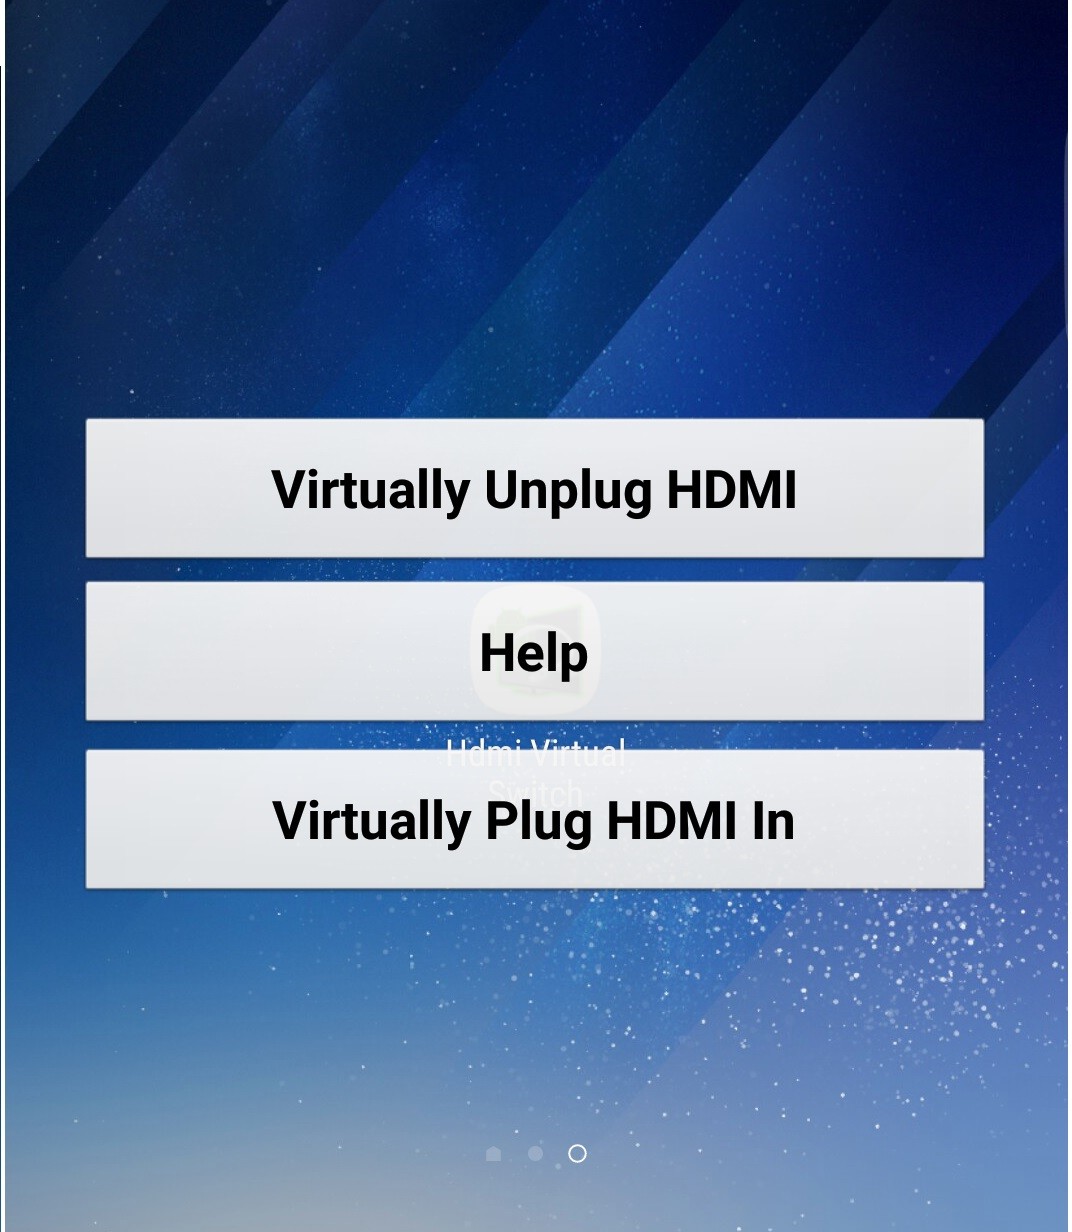 HDMI Virtual Switch